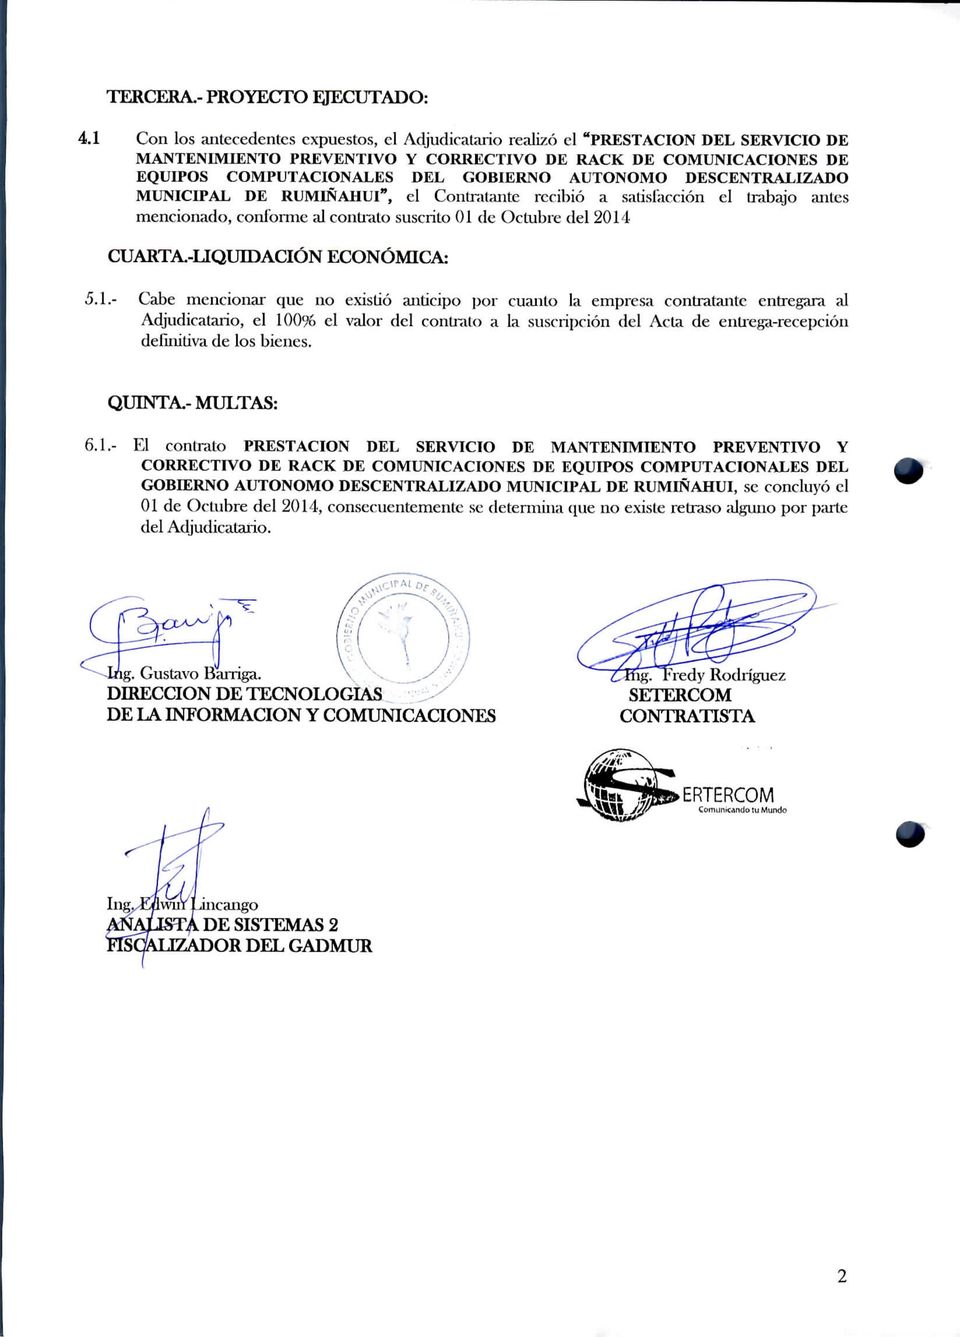 AUTÓNOMO DESCENTRALIZADO MUNICIPAL DE RUMIÑAHUl", el Contraíante recibió a satisfacción el trabajo antes mencionado, conforme al contrato suscrito 01 de Octubre del 2014 CUARTA.